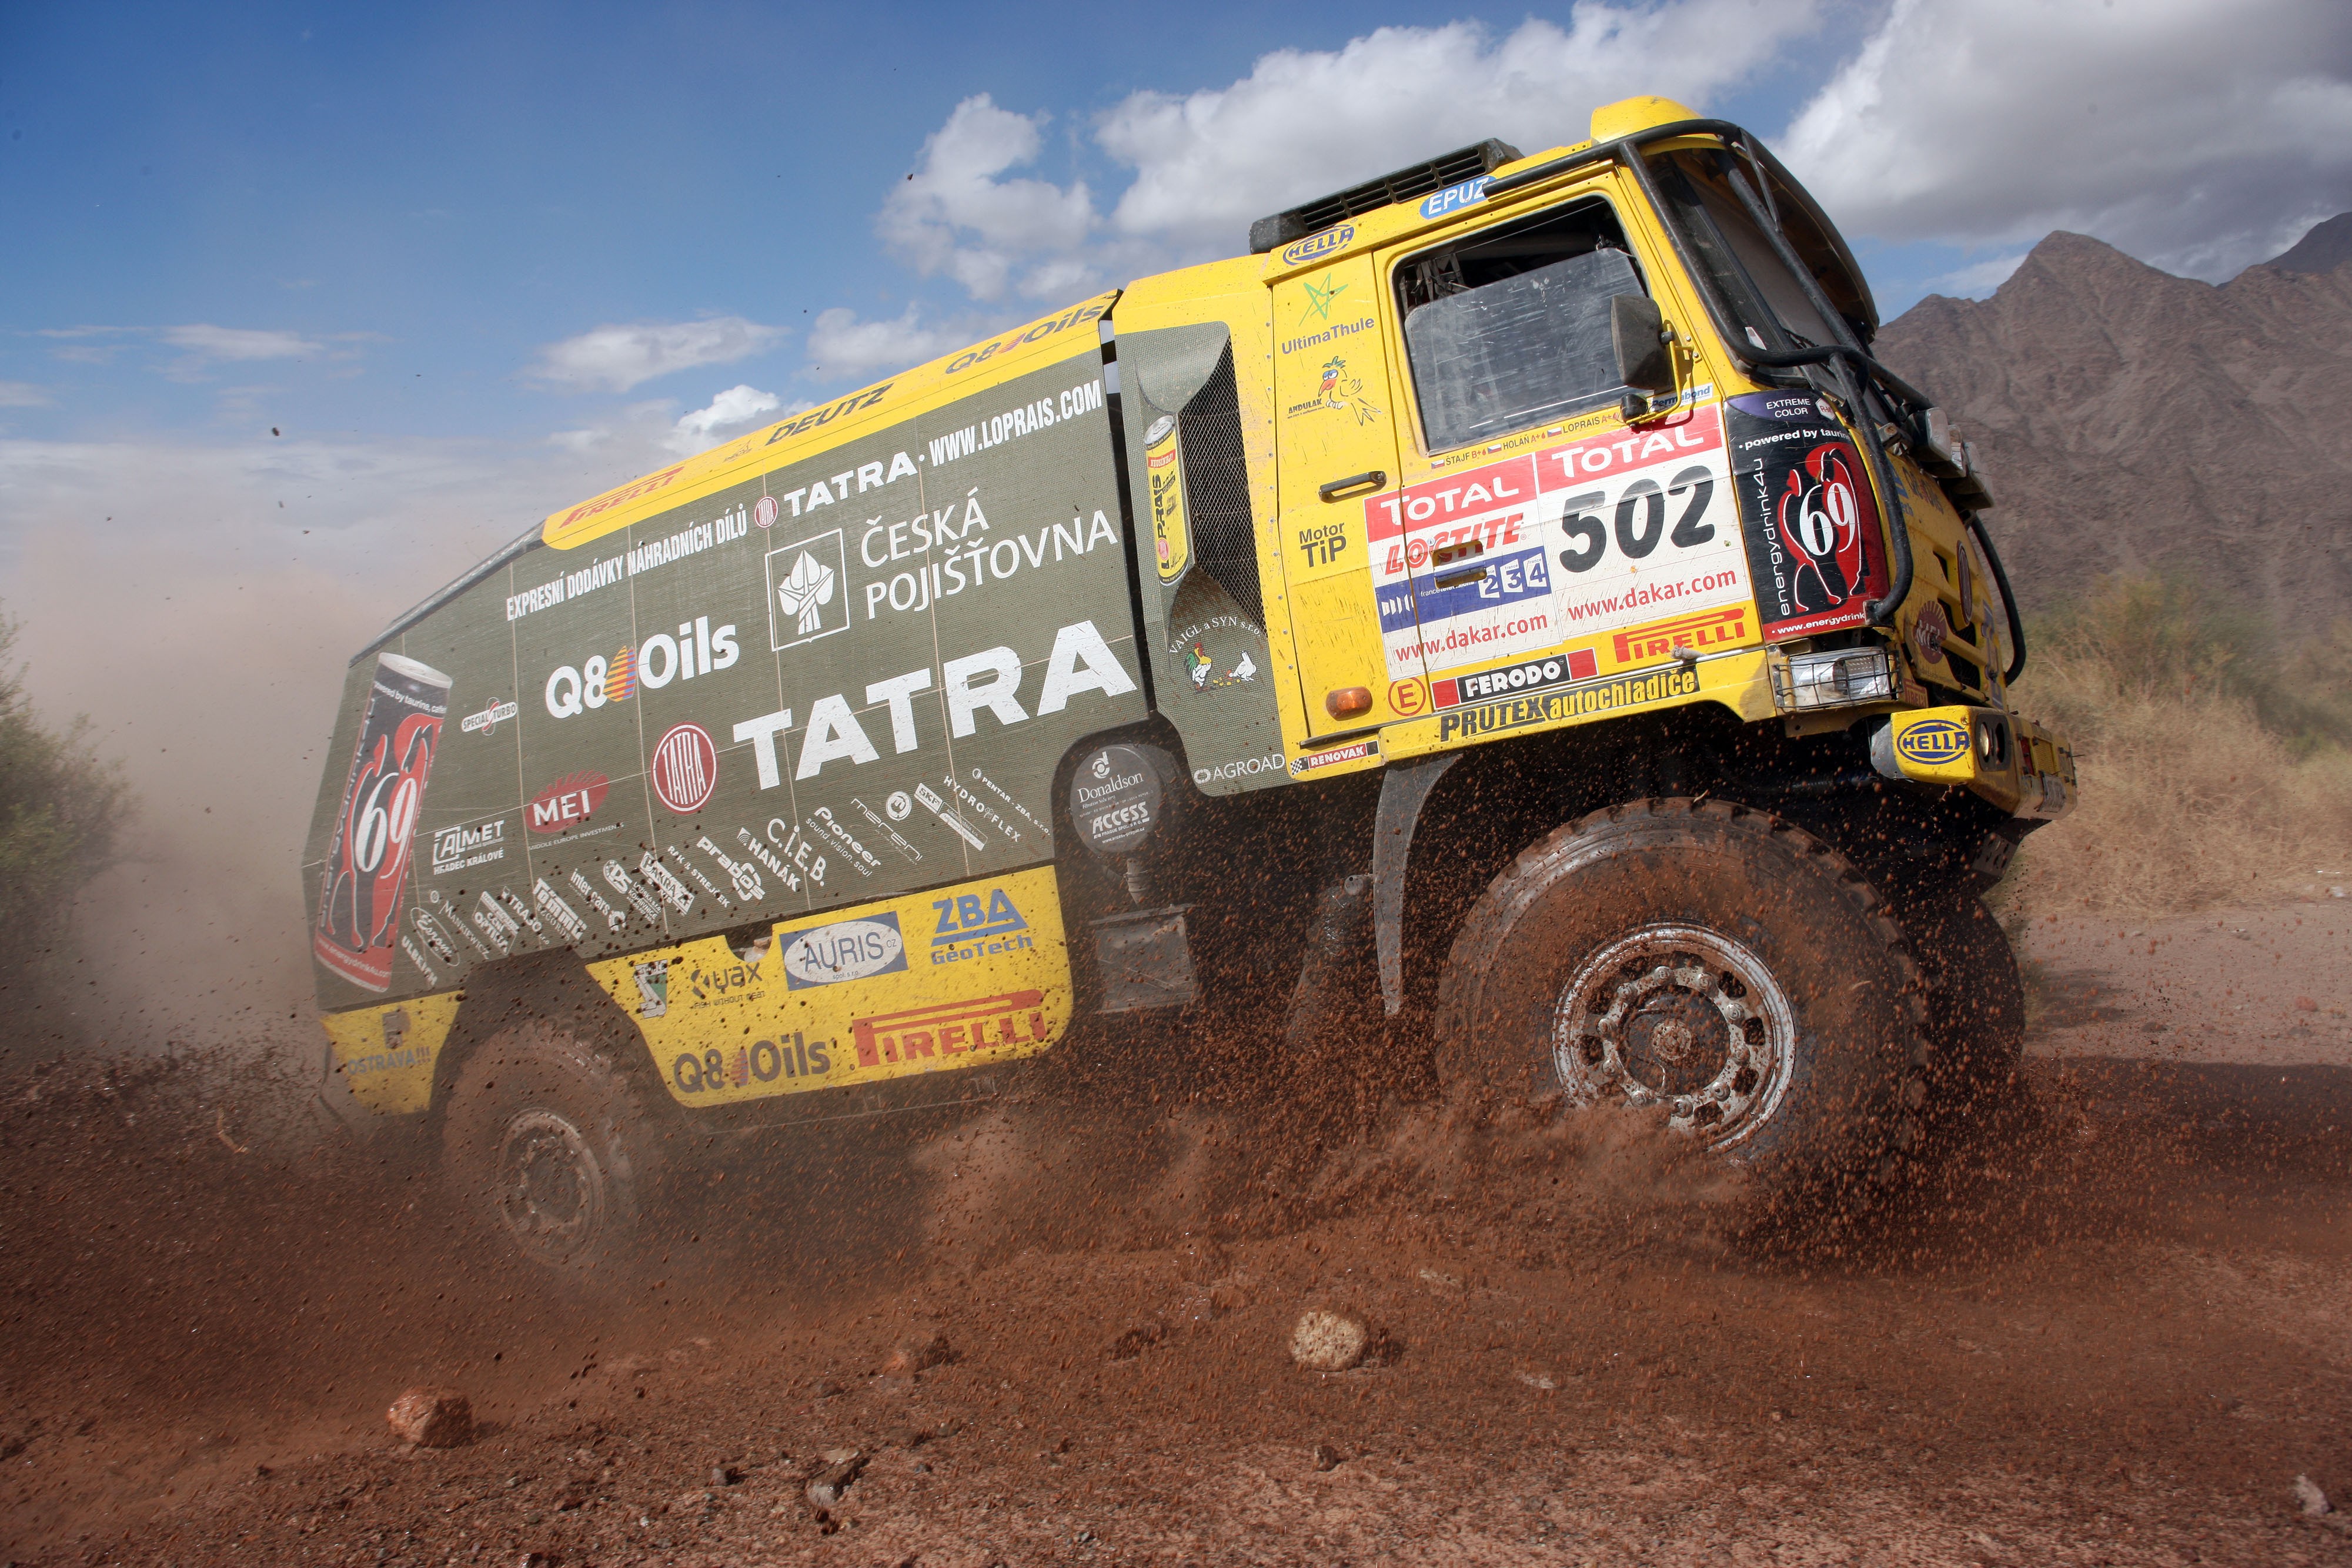 General 4000x2667 truck dirt Dakar Rally motorsport vehicle numbers livery Czech trucks